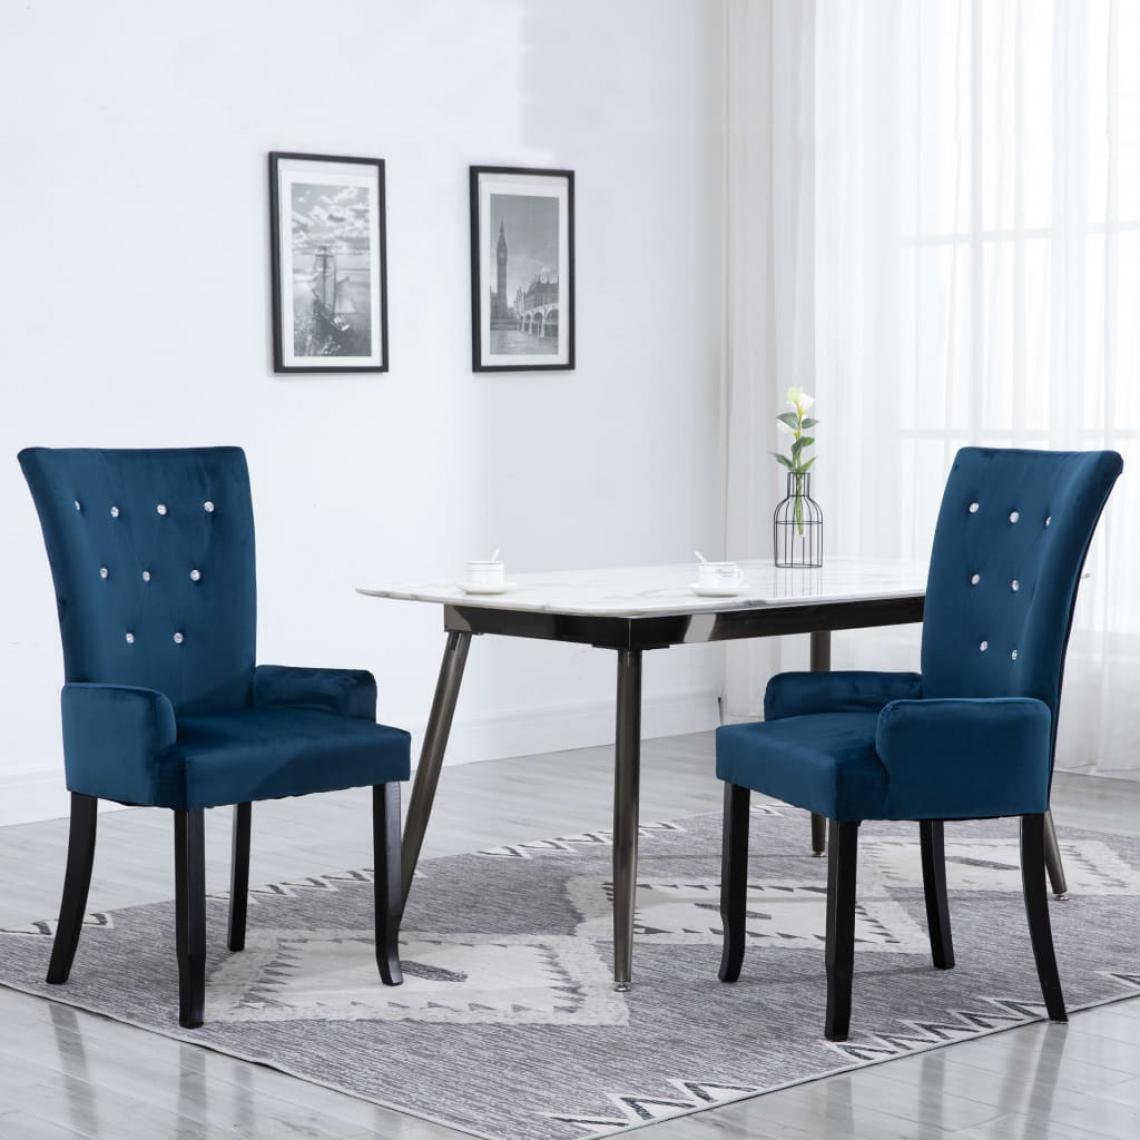 Chunhelife - Chaise de salle à manger avec accoudoirs Bleu foncé Velours - Chaises